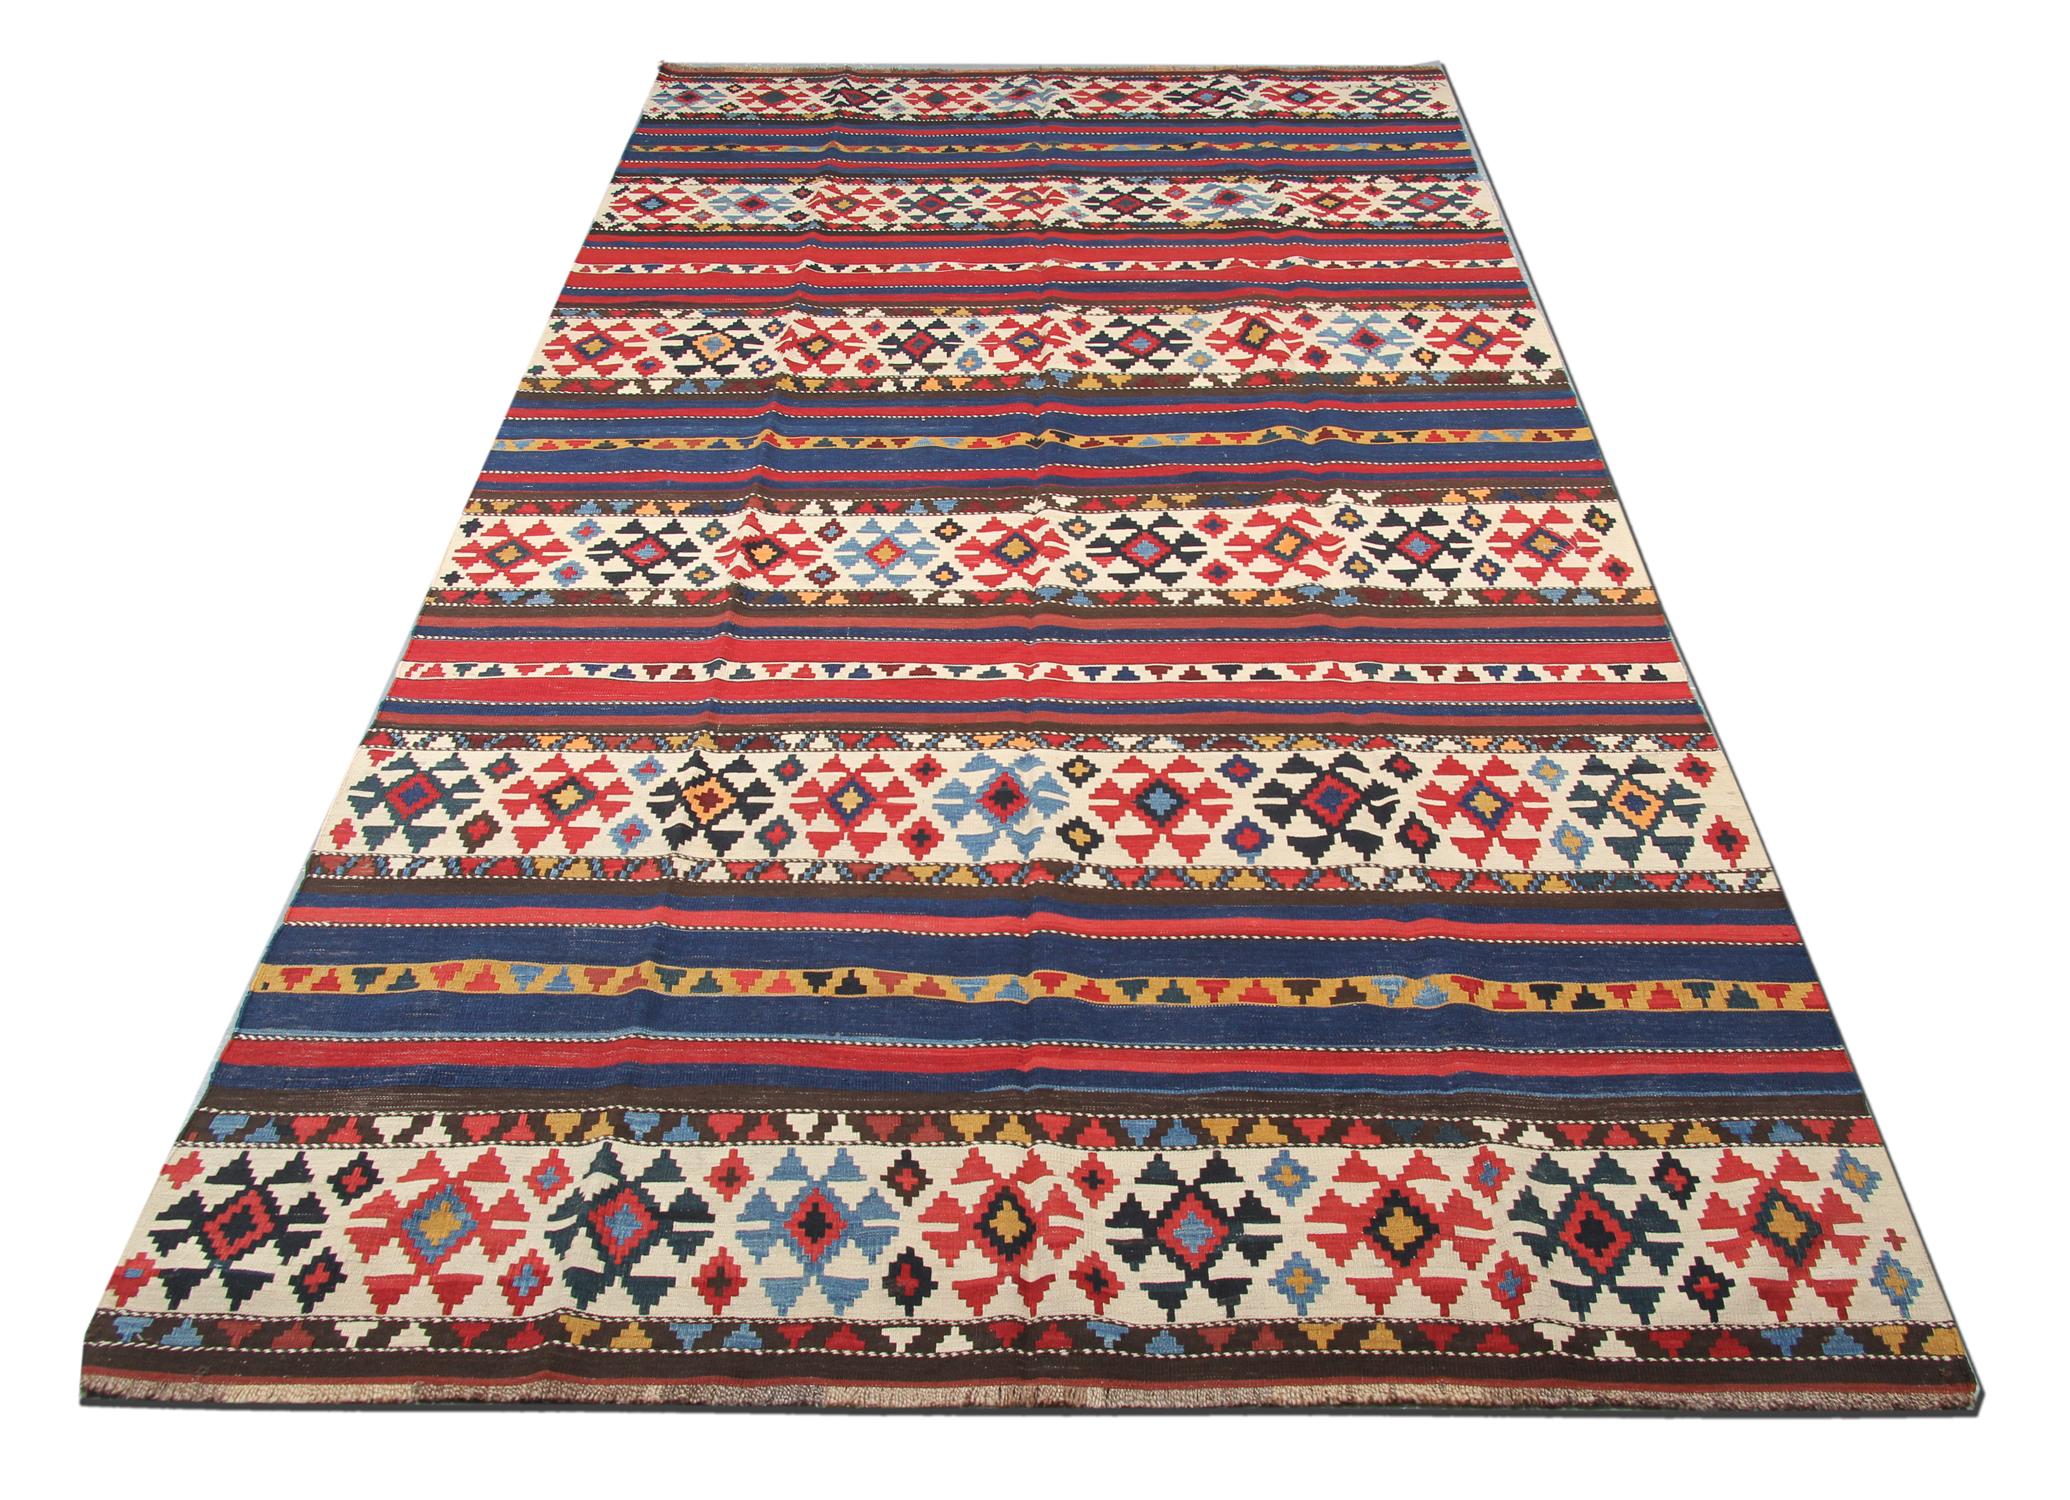 Dieser alte kaukasische Schirwan-Teppich wurde in den 1940er Jahren mit einem fantastischen geometrischen Streifendesign handgewebt. Das Streifenmuster wurde mit roten und blauen Akzenten gewebt und weist elfenbeinfarbene Felder mit geometrischen